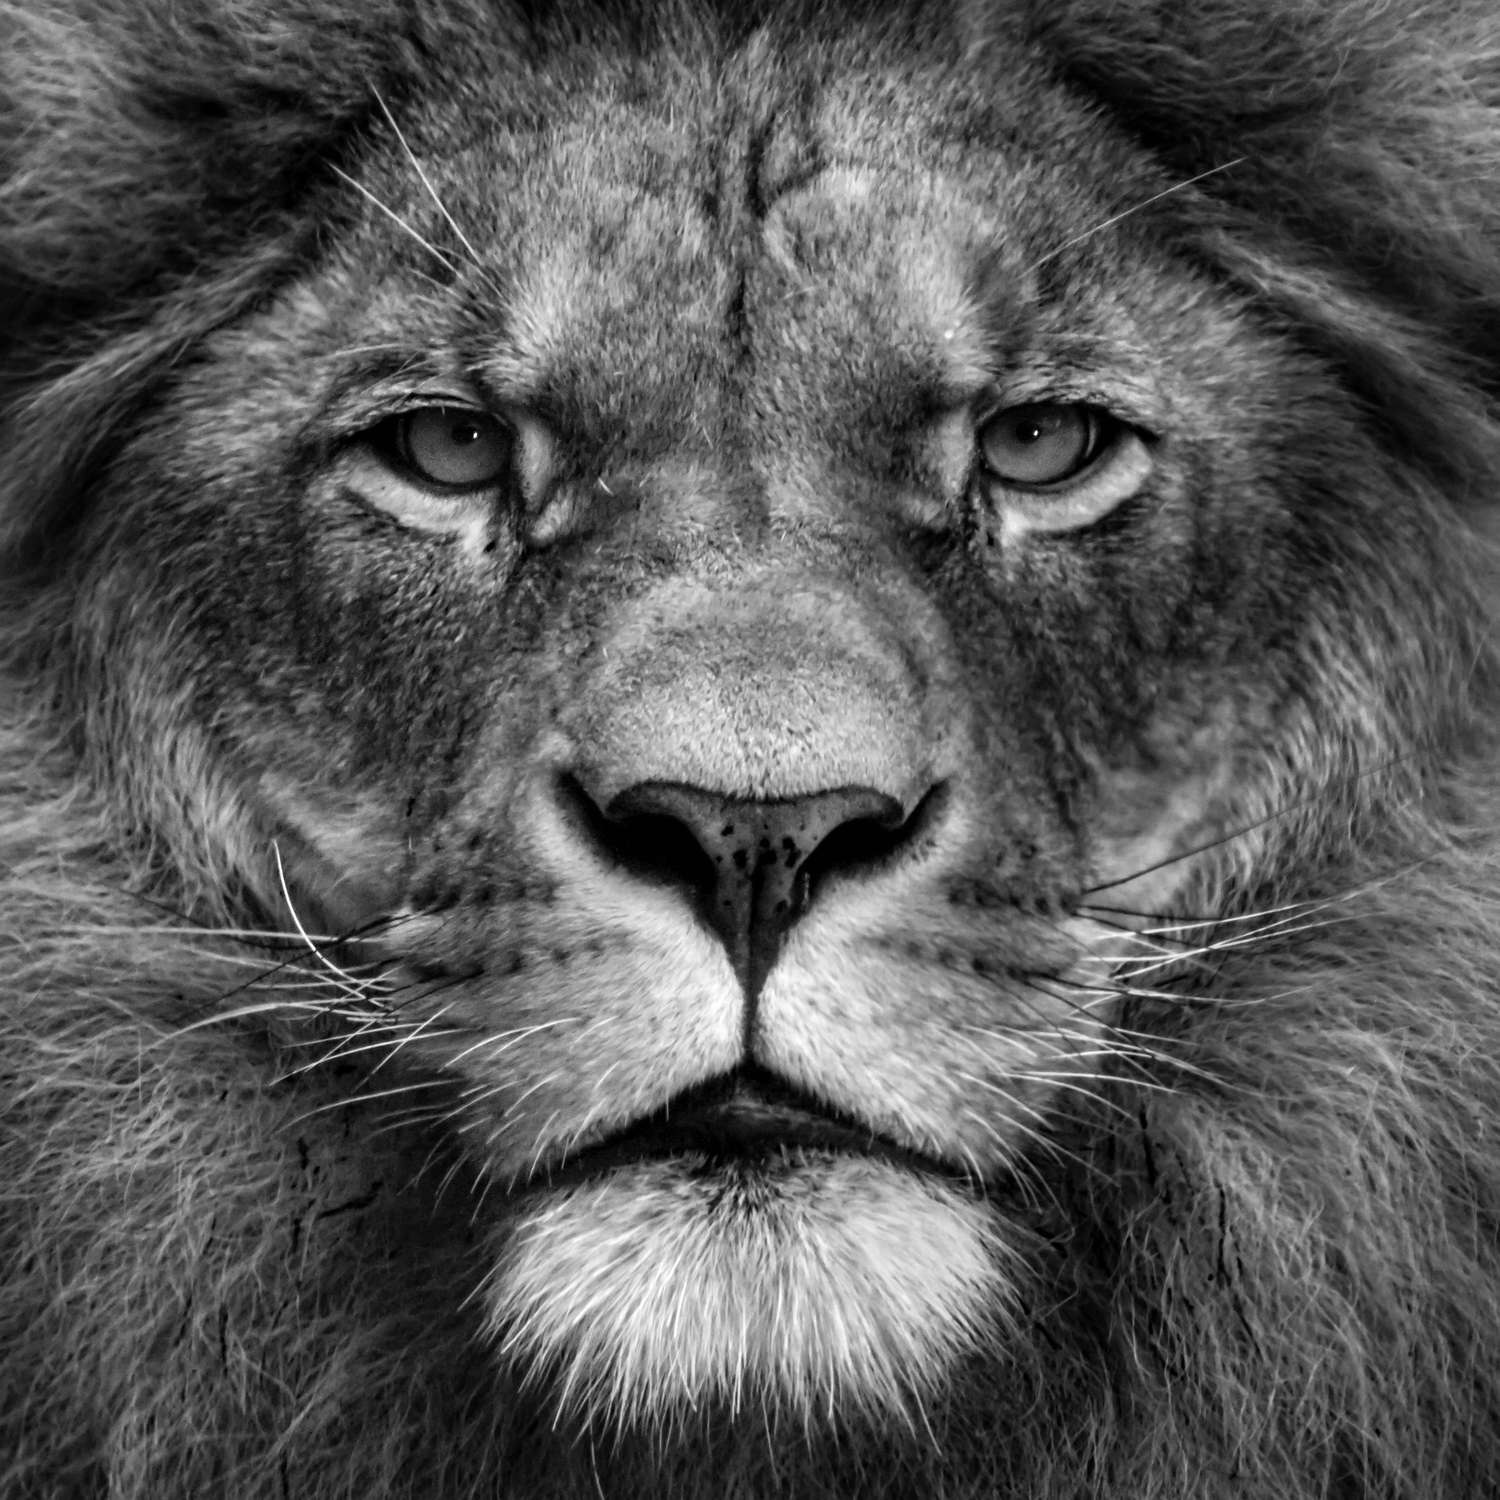             Papier peint Face de lion gros plan - noir et blanc
        